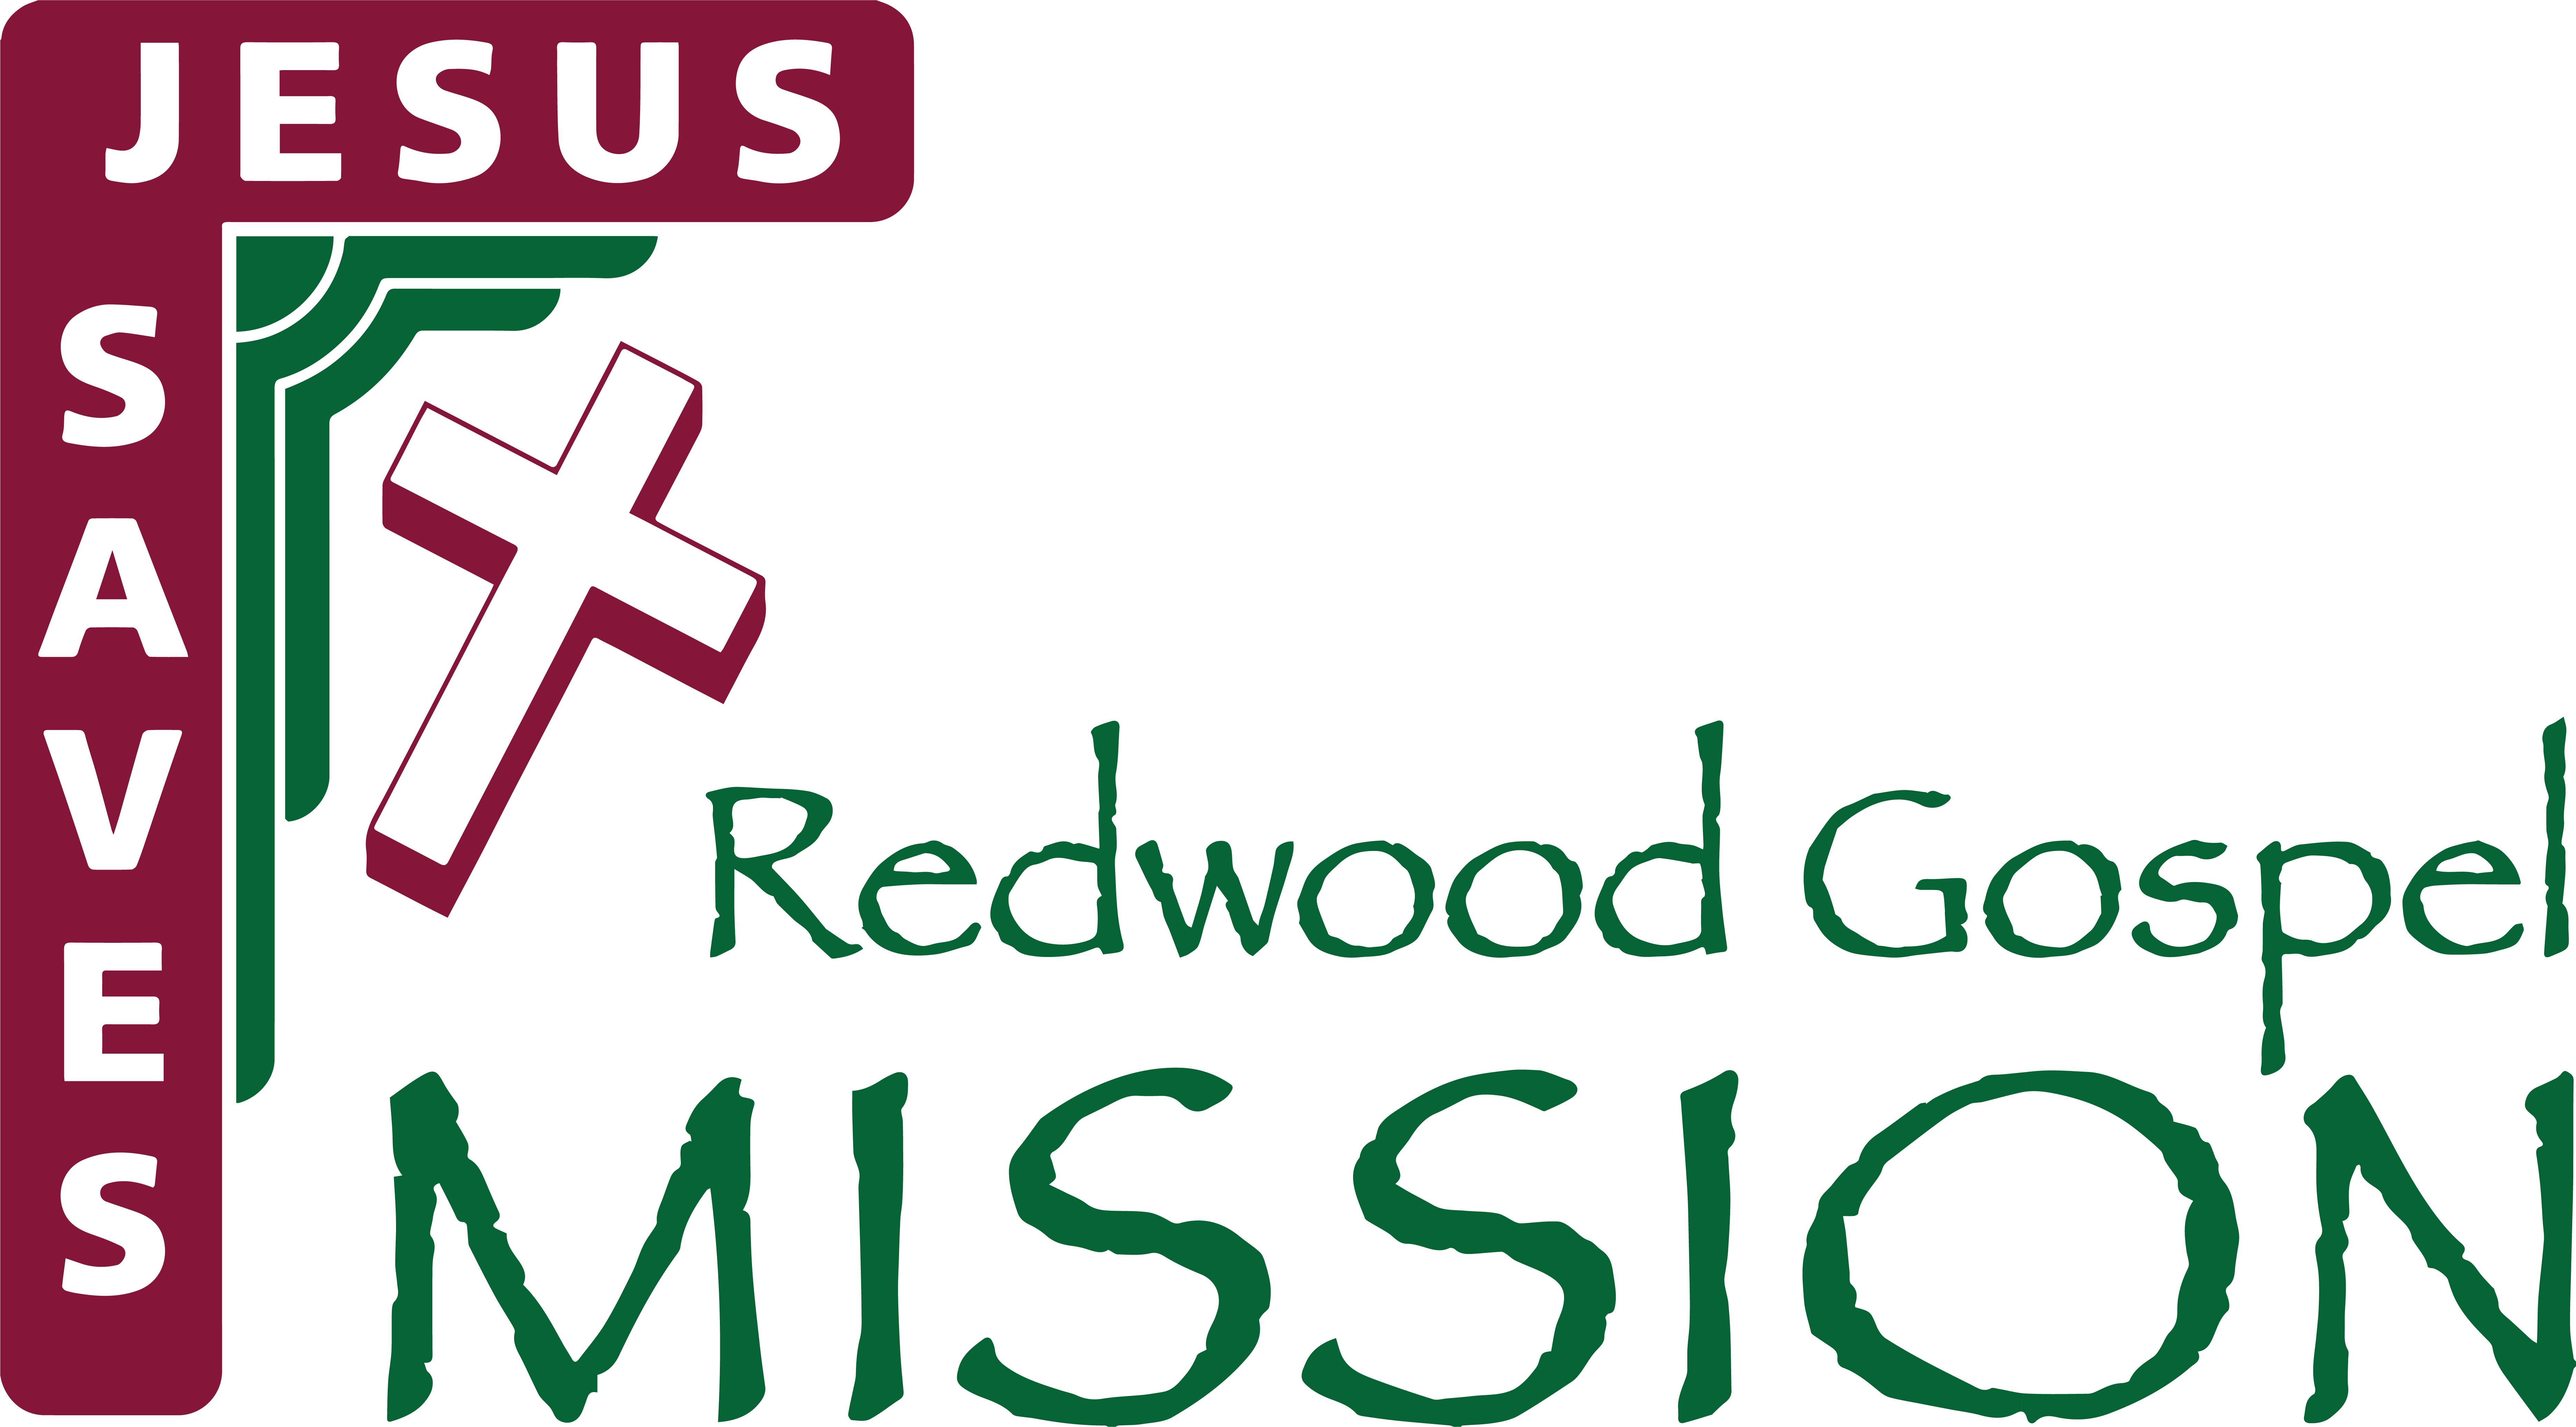 Redwood Gospel Mission